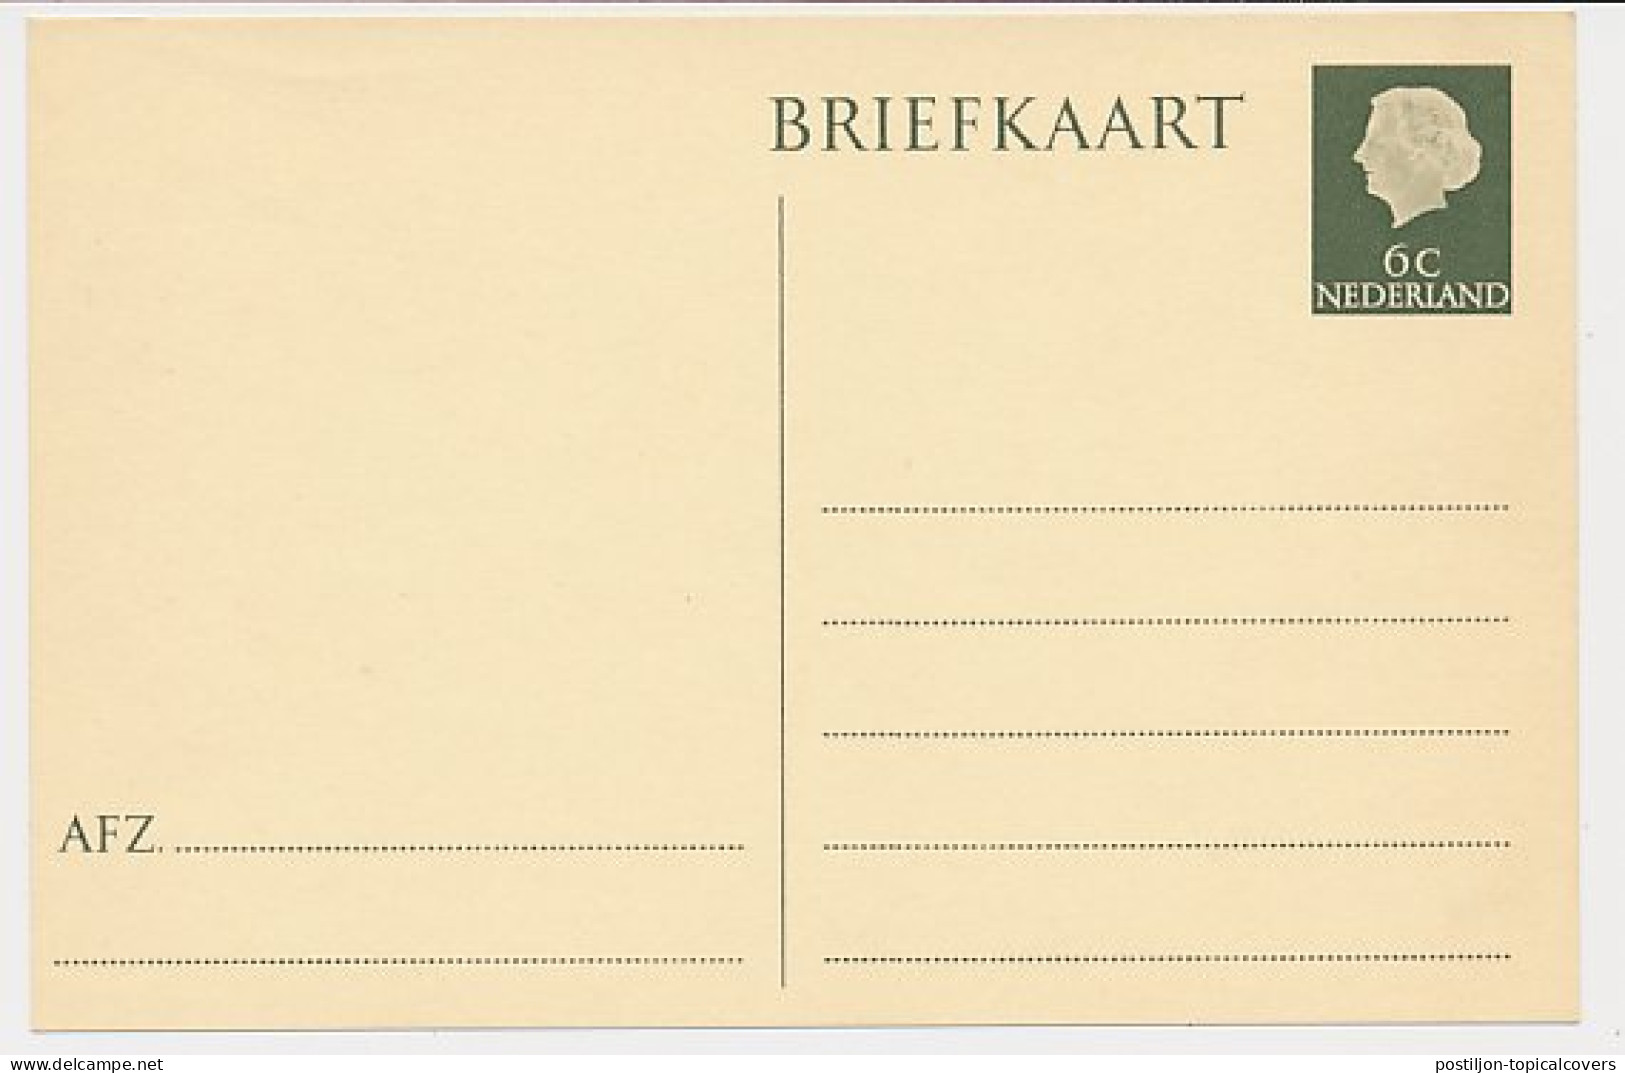 Briefkaart G. 313 - Postwaardestukken